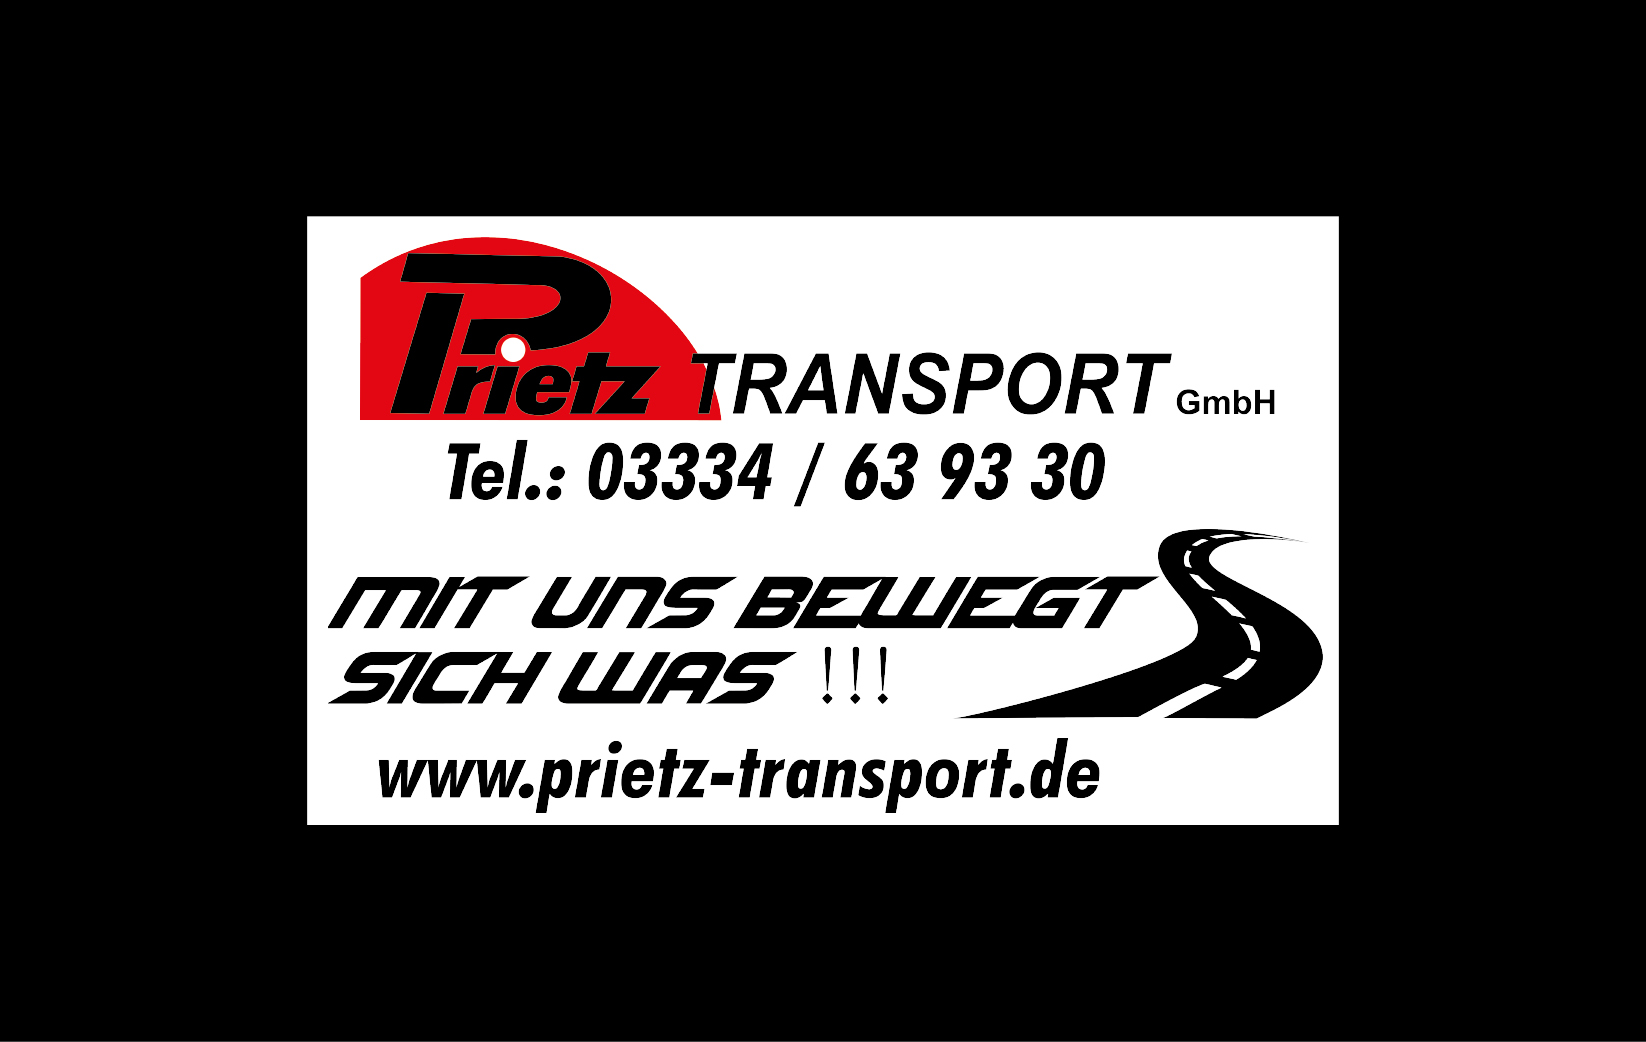 Prietz Transport